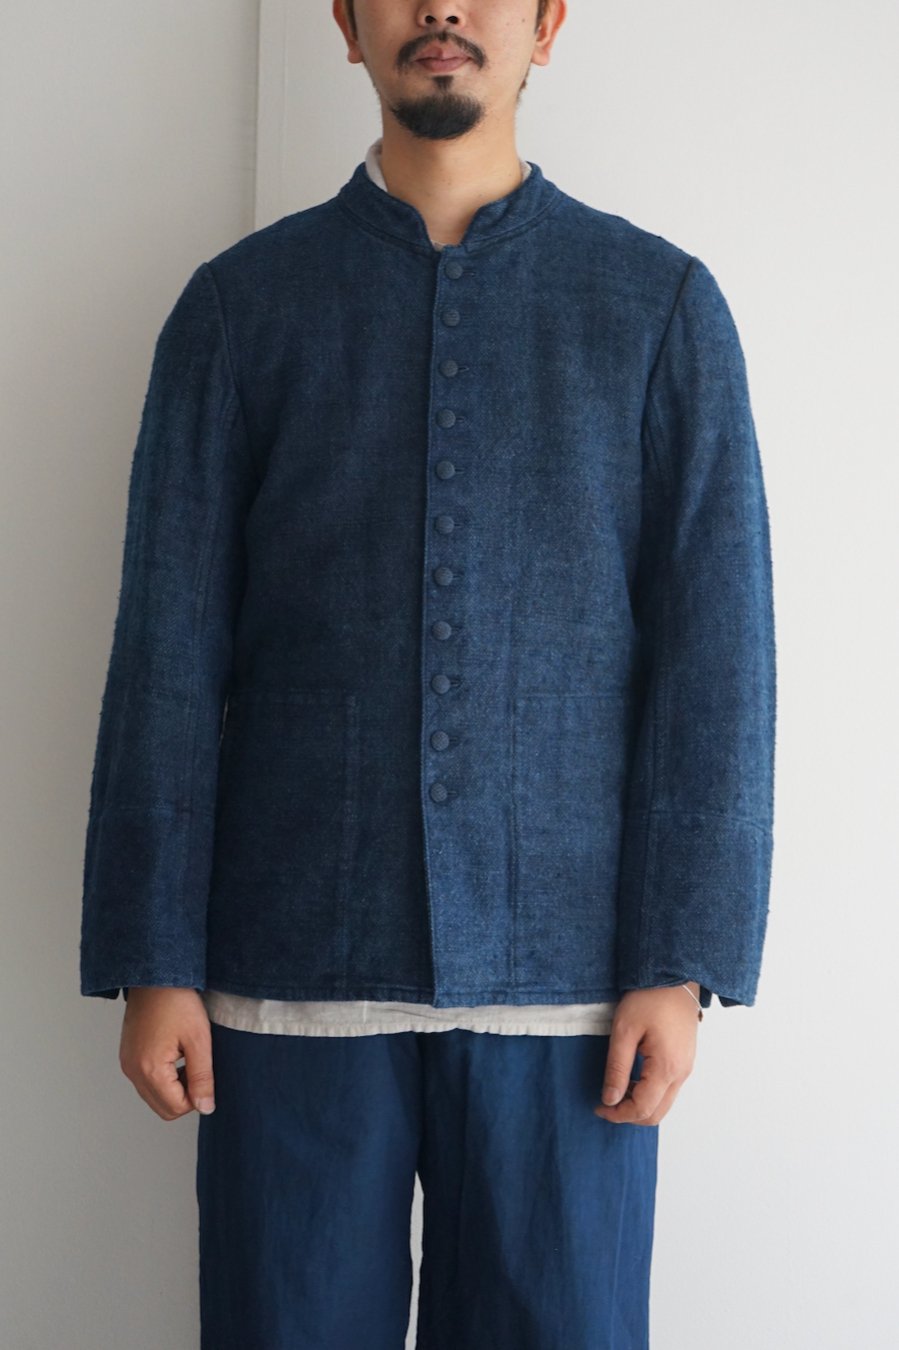 COSMIC WONDER / Garabou jacket / Sumiyambaru indigo